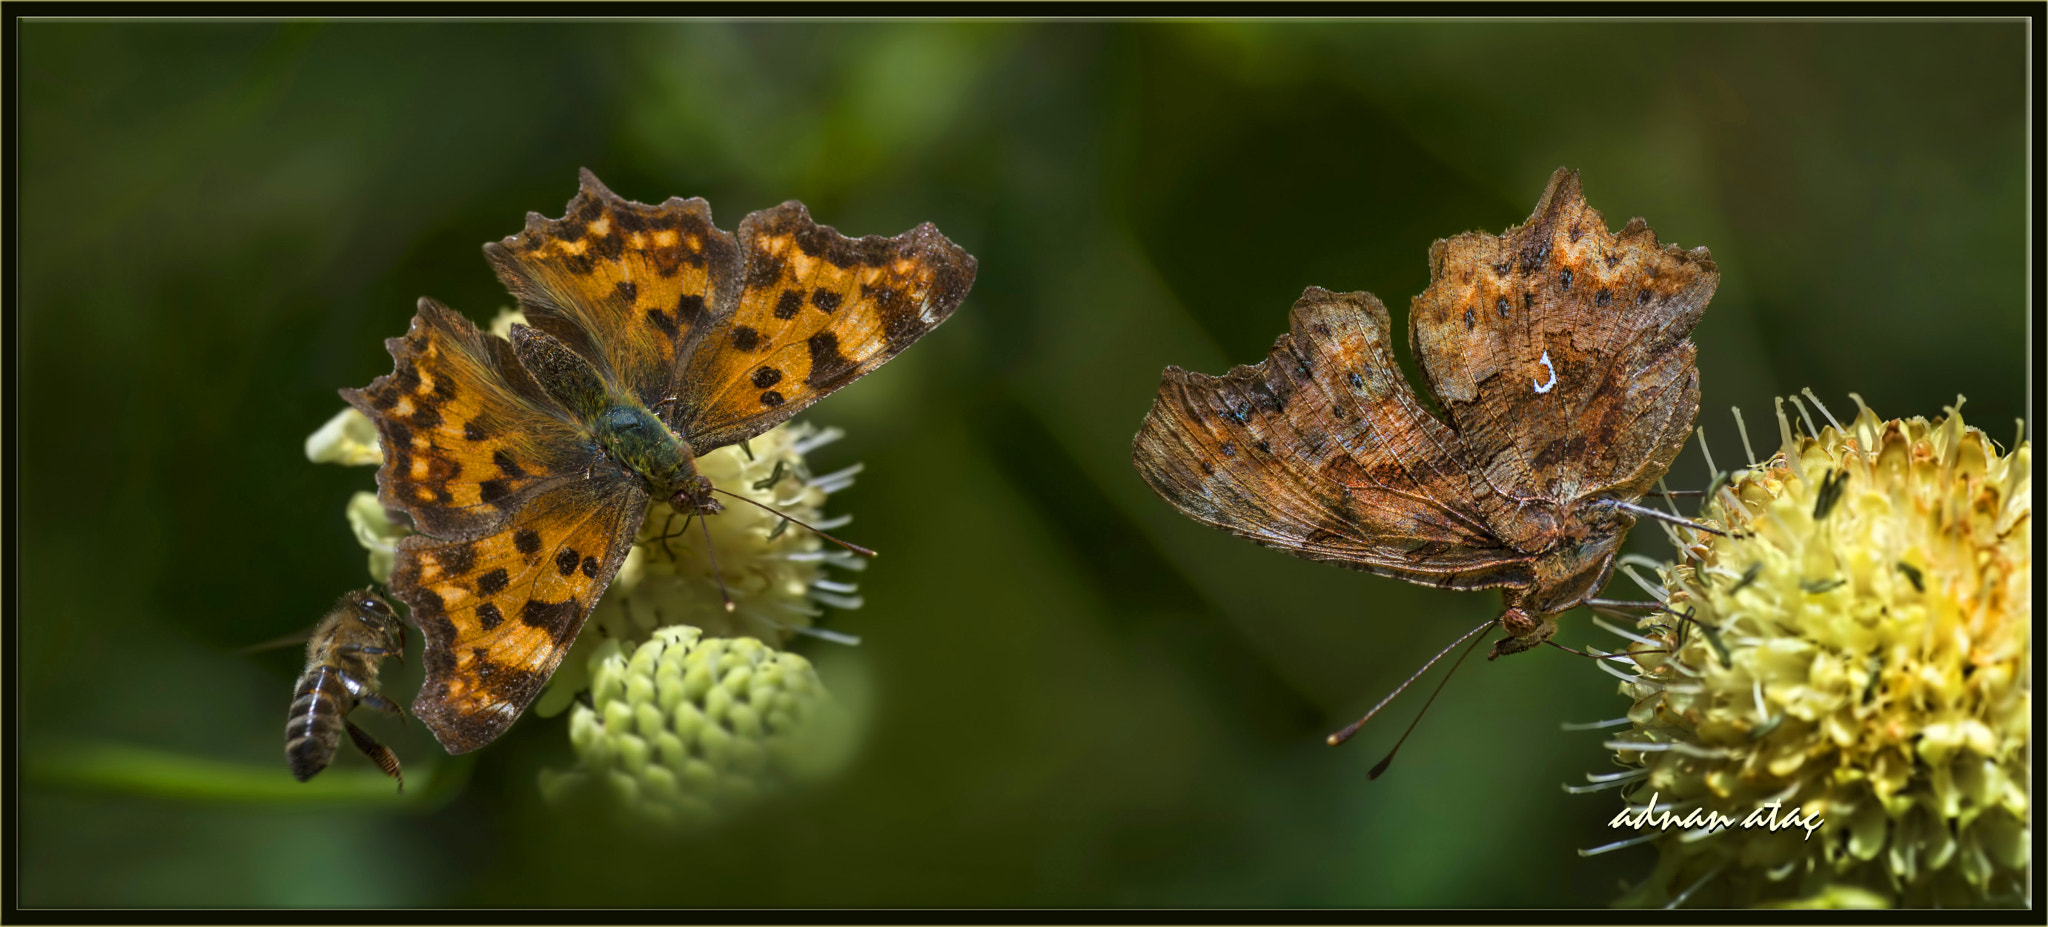 Nikon D5 sample photo. Yırtık pırtık kelebeği - polygonia c-album - comma butterfly photography